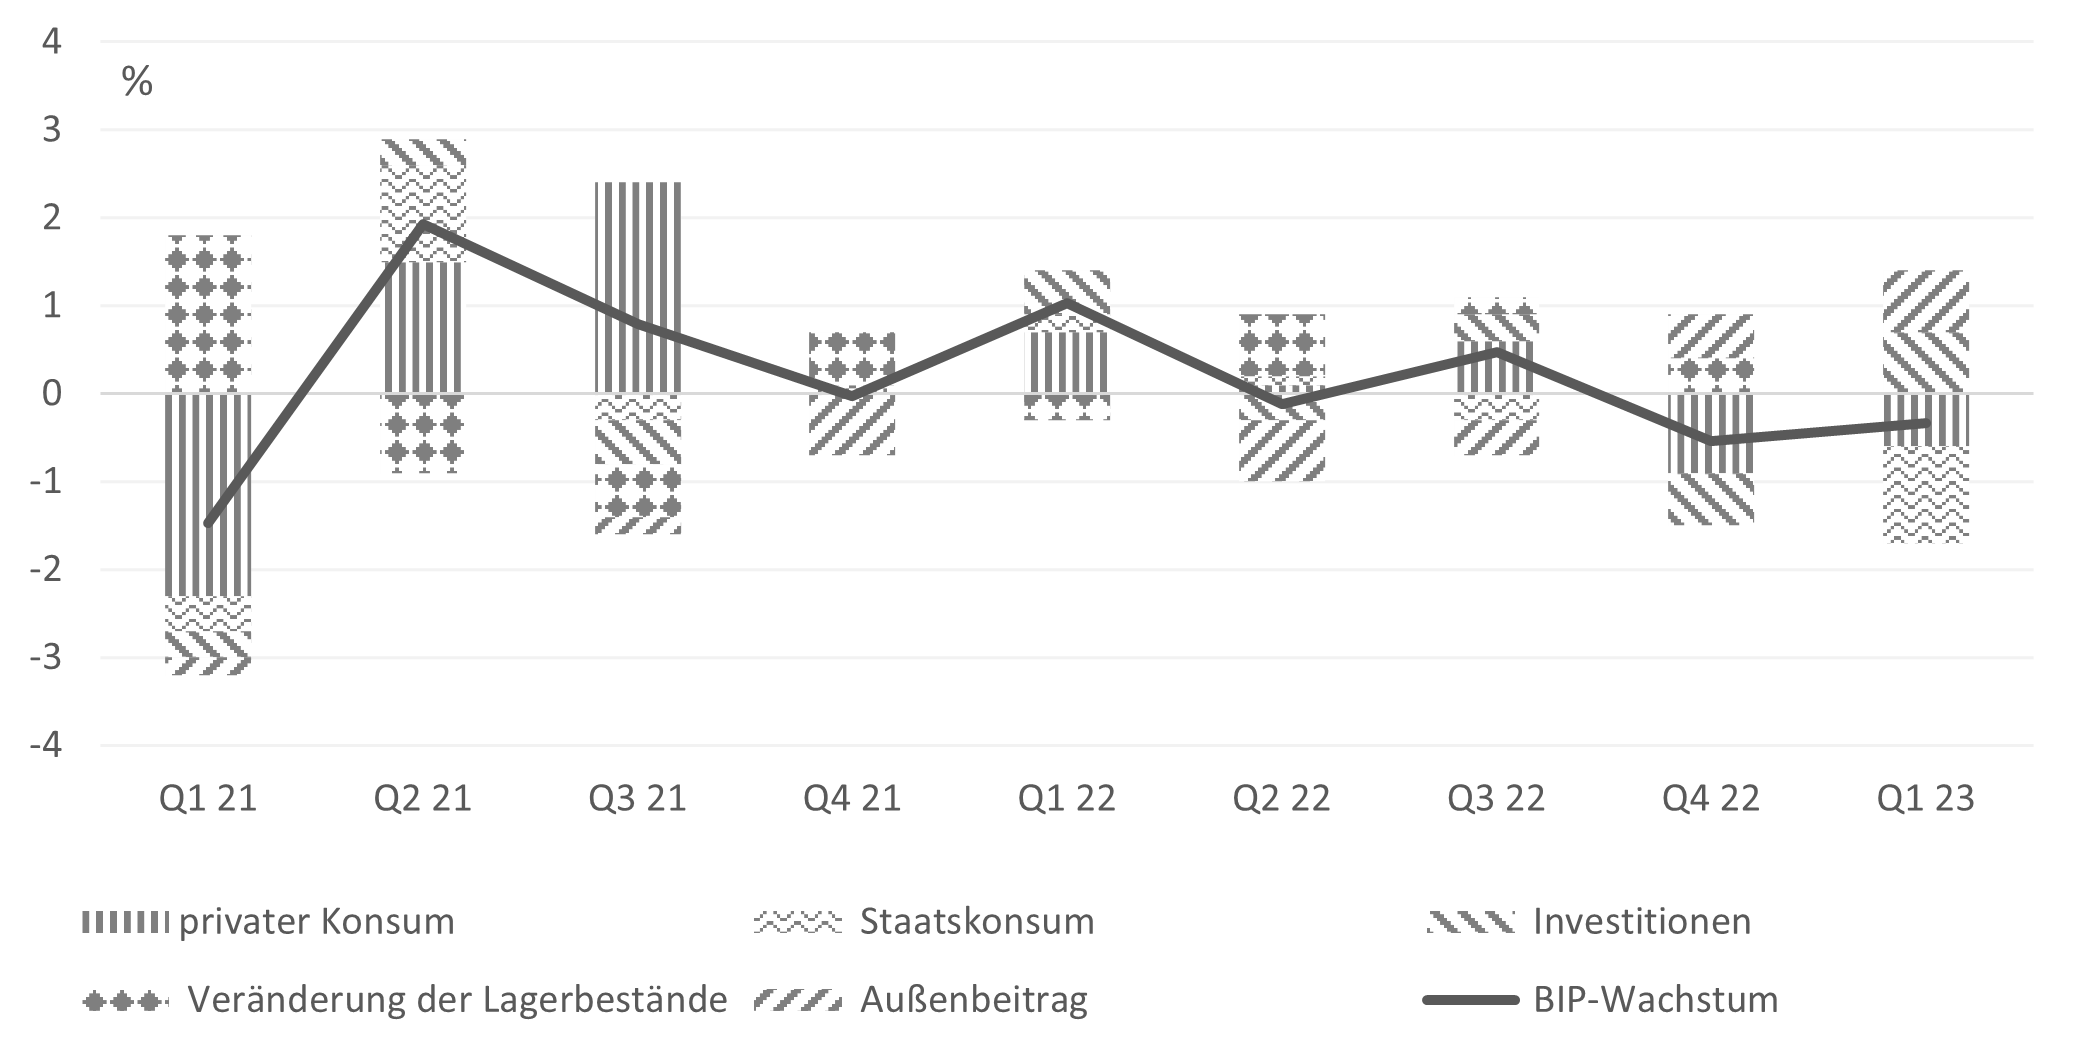 Abbildung 1. BIP-Wachstum und die Wachstumsbeiträge der BIP-Komponenten. Quelle: Eigene Darstellung, Flossbach von Storch Research Institute, Macrobond